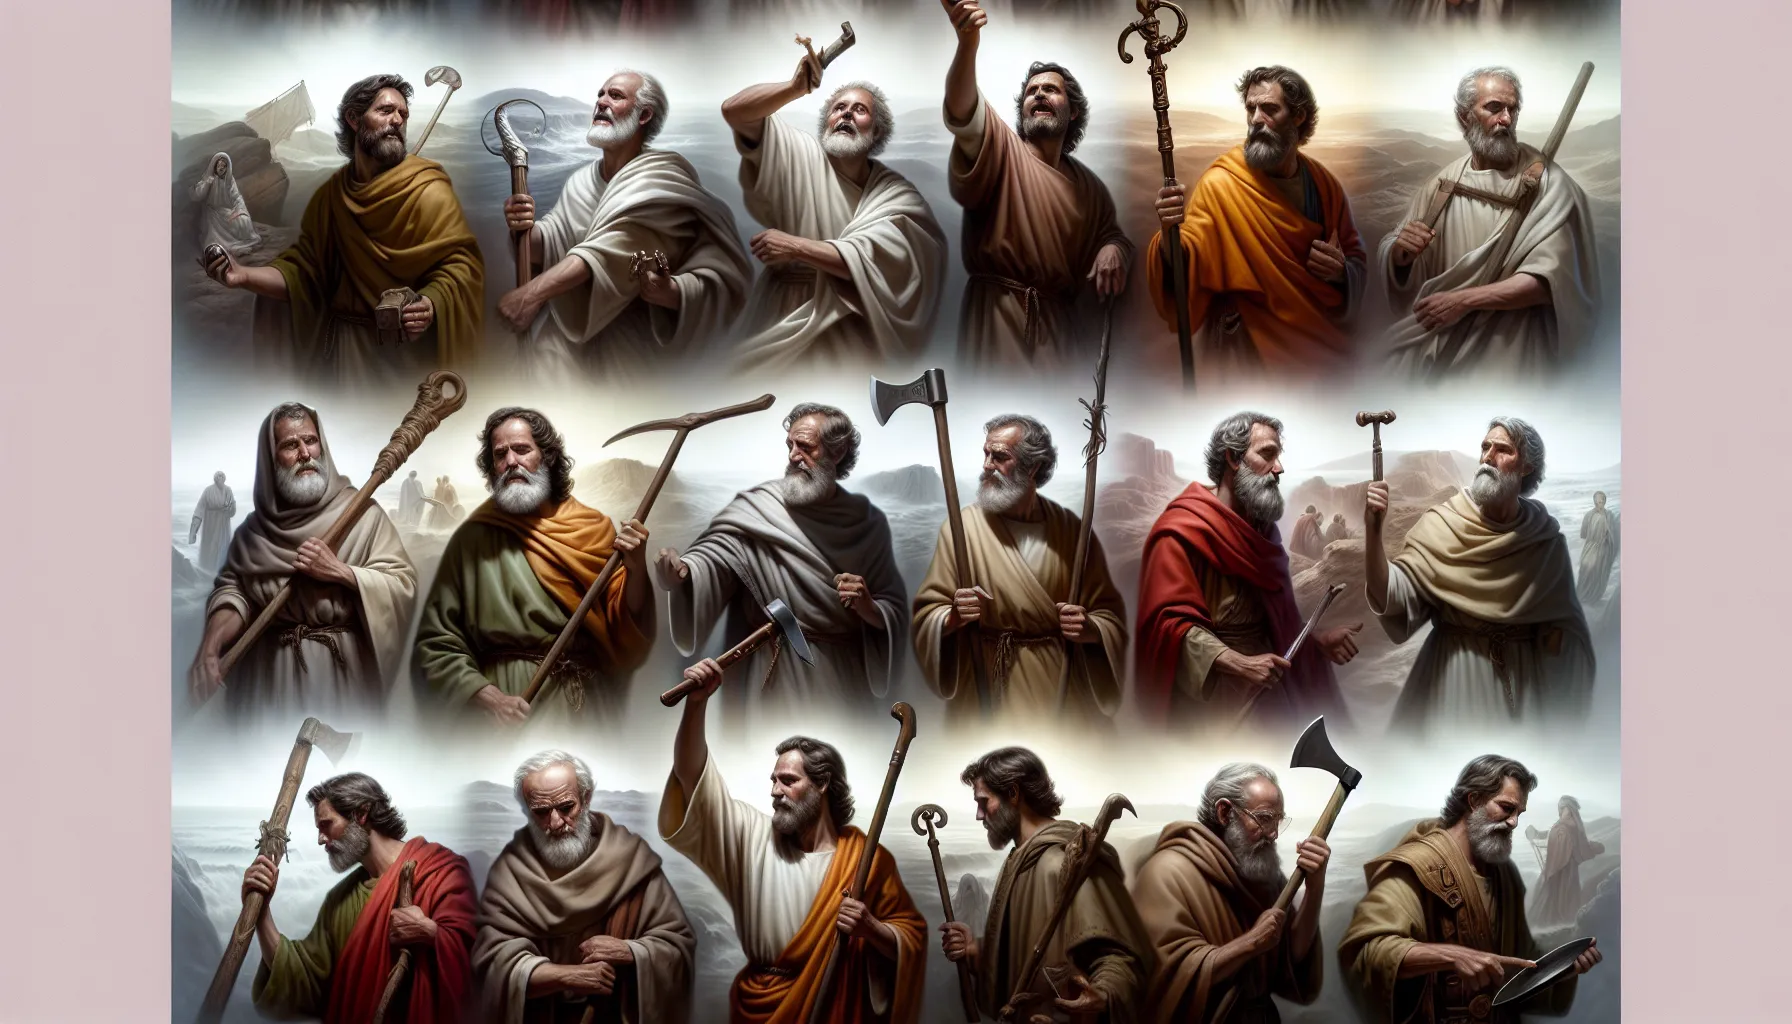 Imagen representando los destinos de los apóstoles de acuerdo a la Biblia.